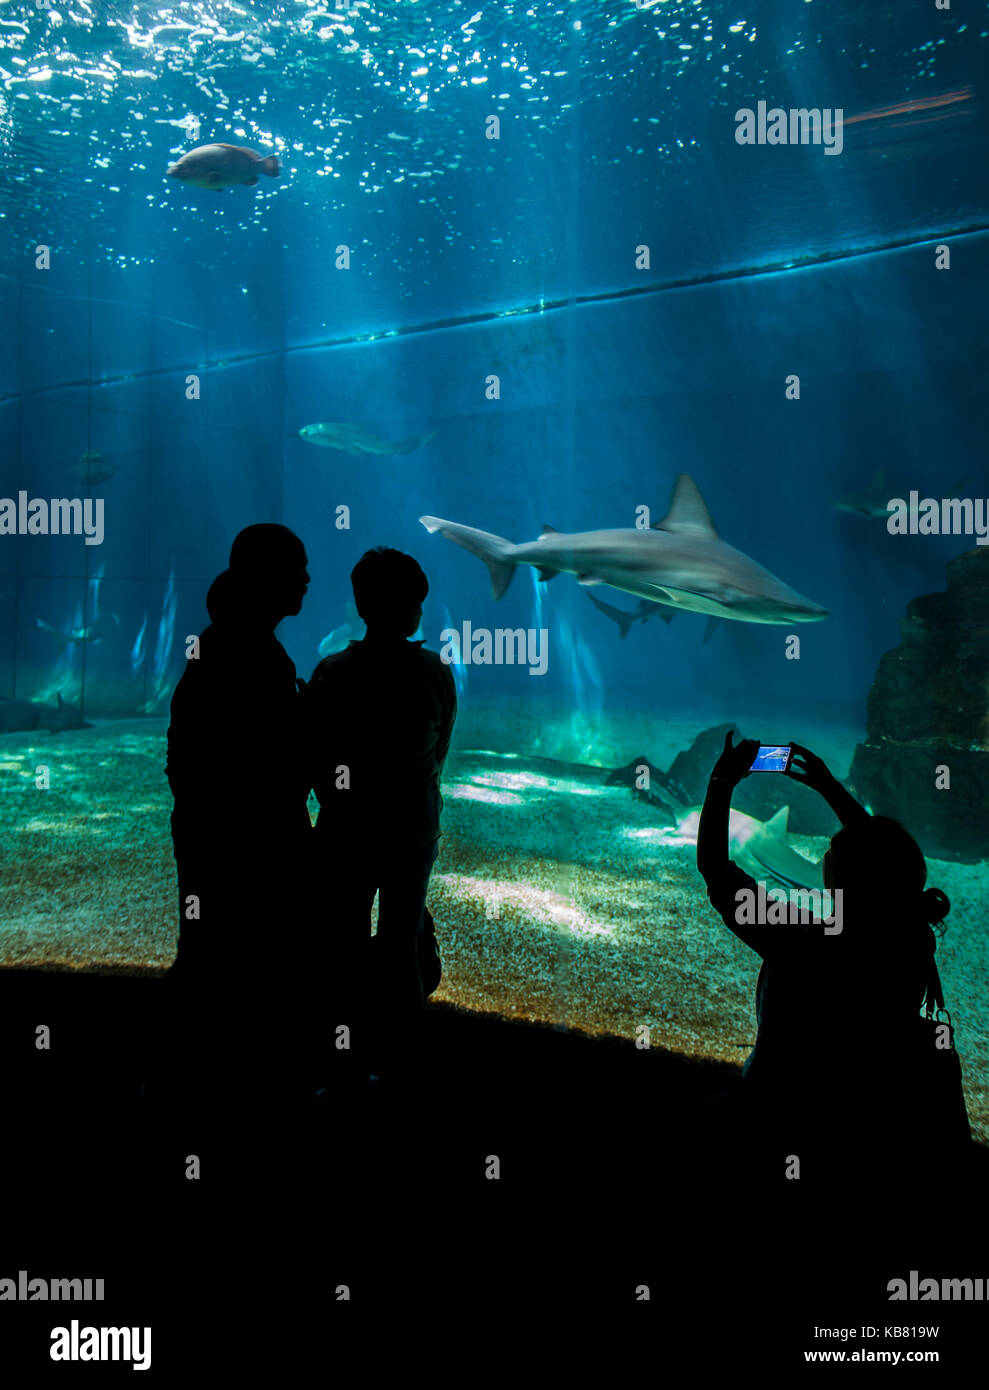 GENOA, ITALY - JUNE 2, 2015: Unidentified people at Genoa aquarium. The Aquarium of Genoa is the largest aquarium in Italy and among the largest in Eu Stock Photo